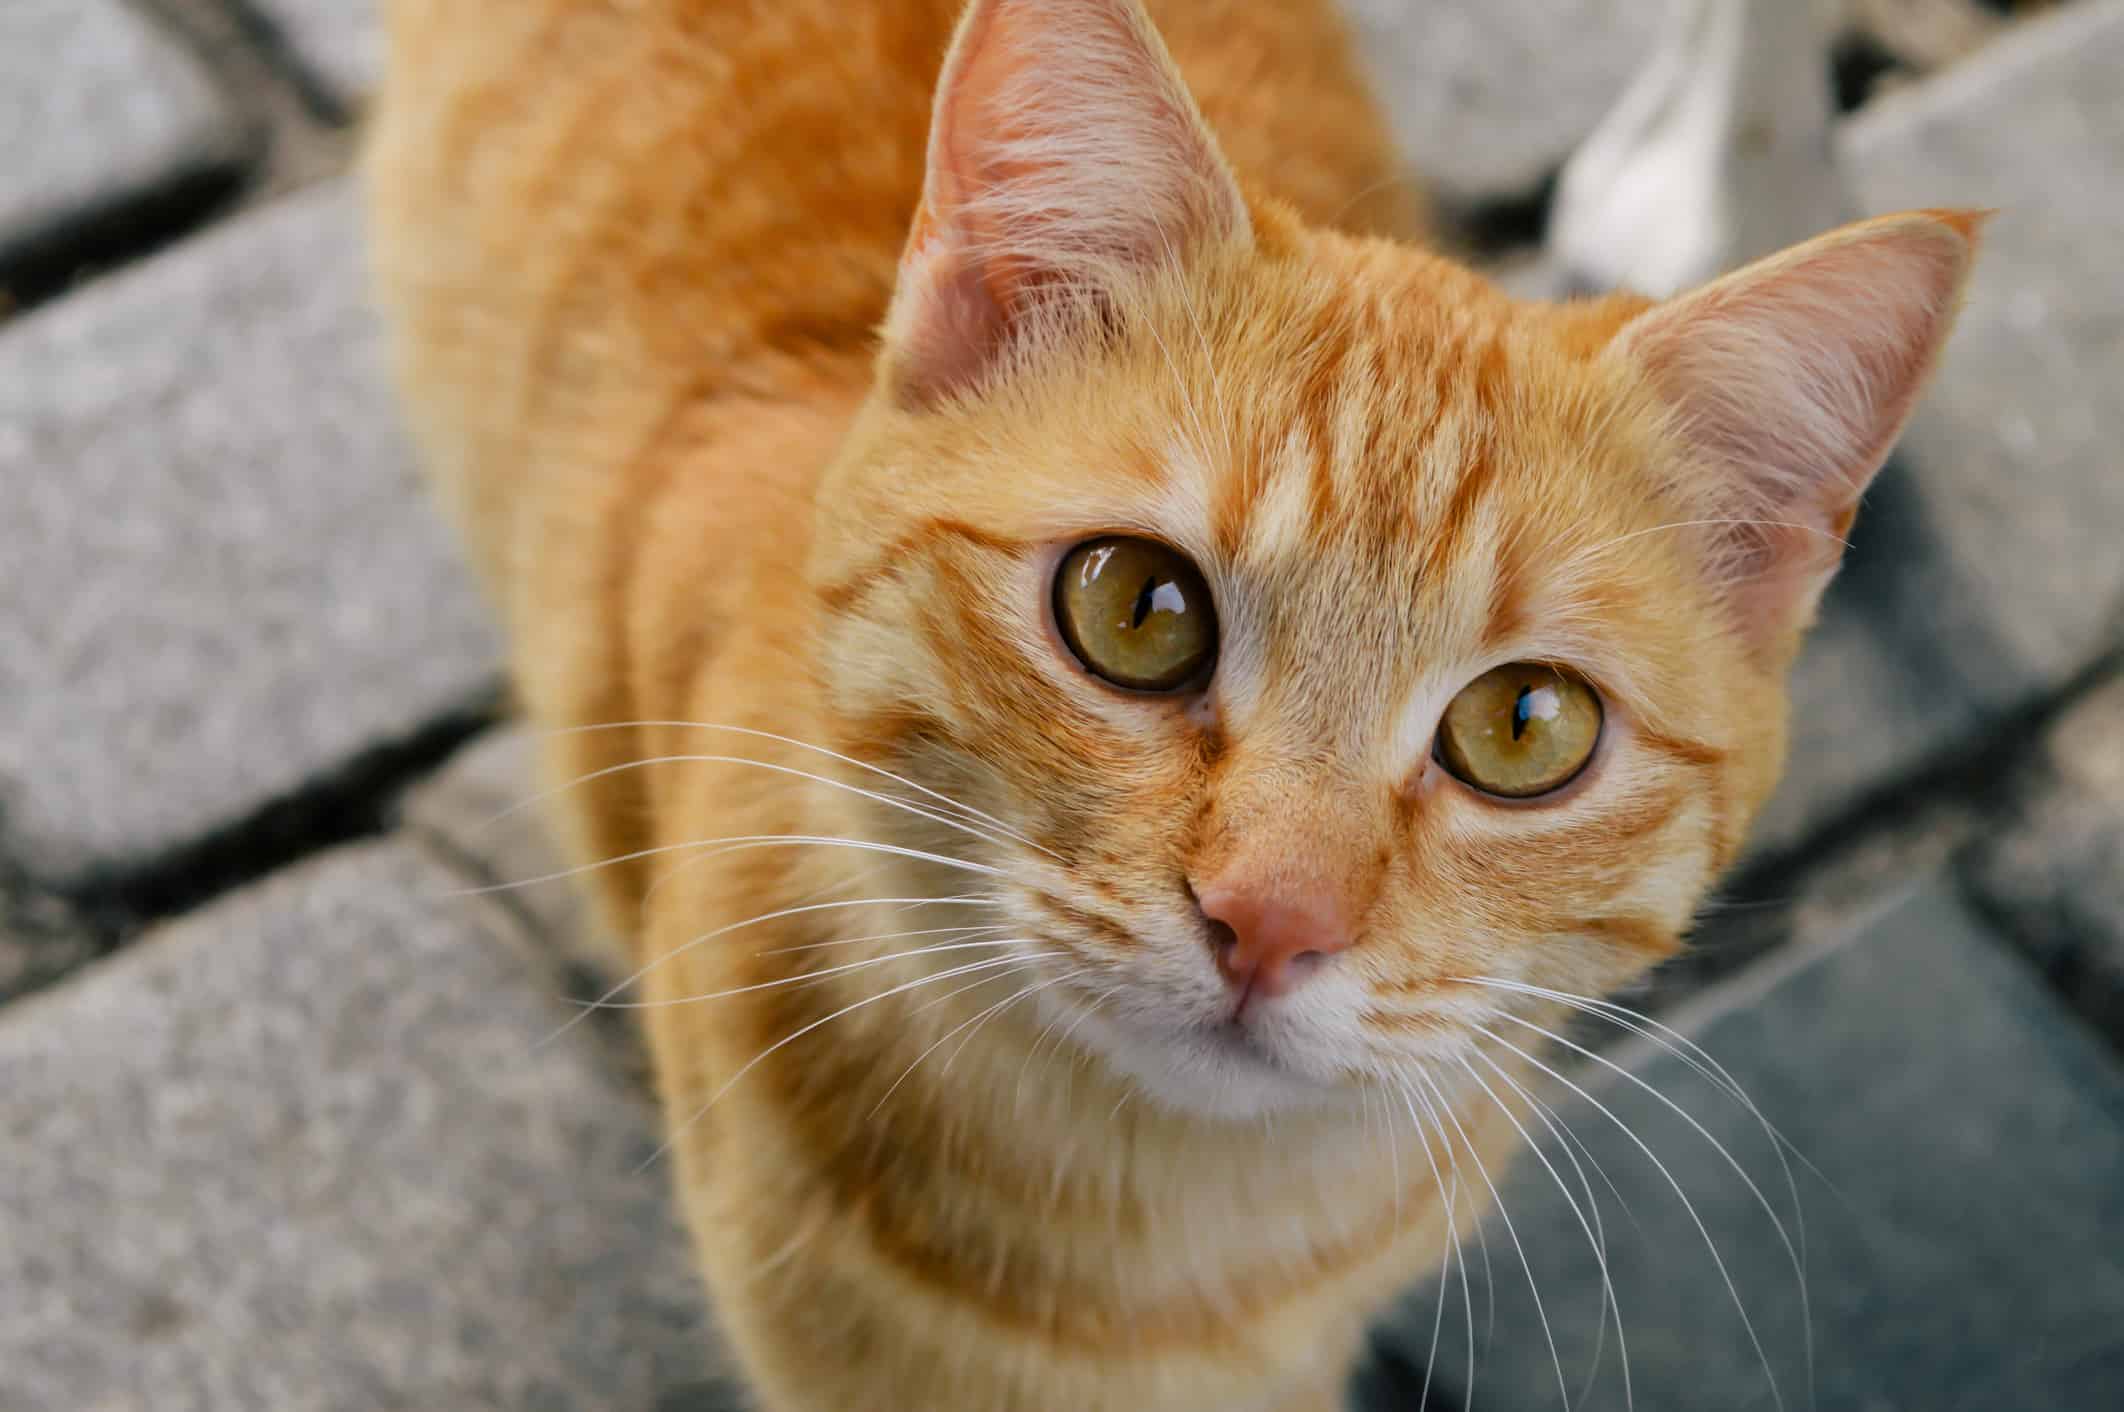 Con mèo mướp màu cam có đánh dấu hình chữ M